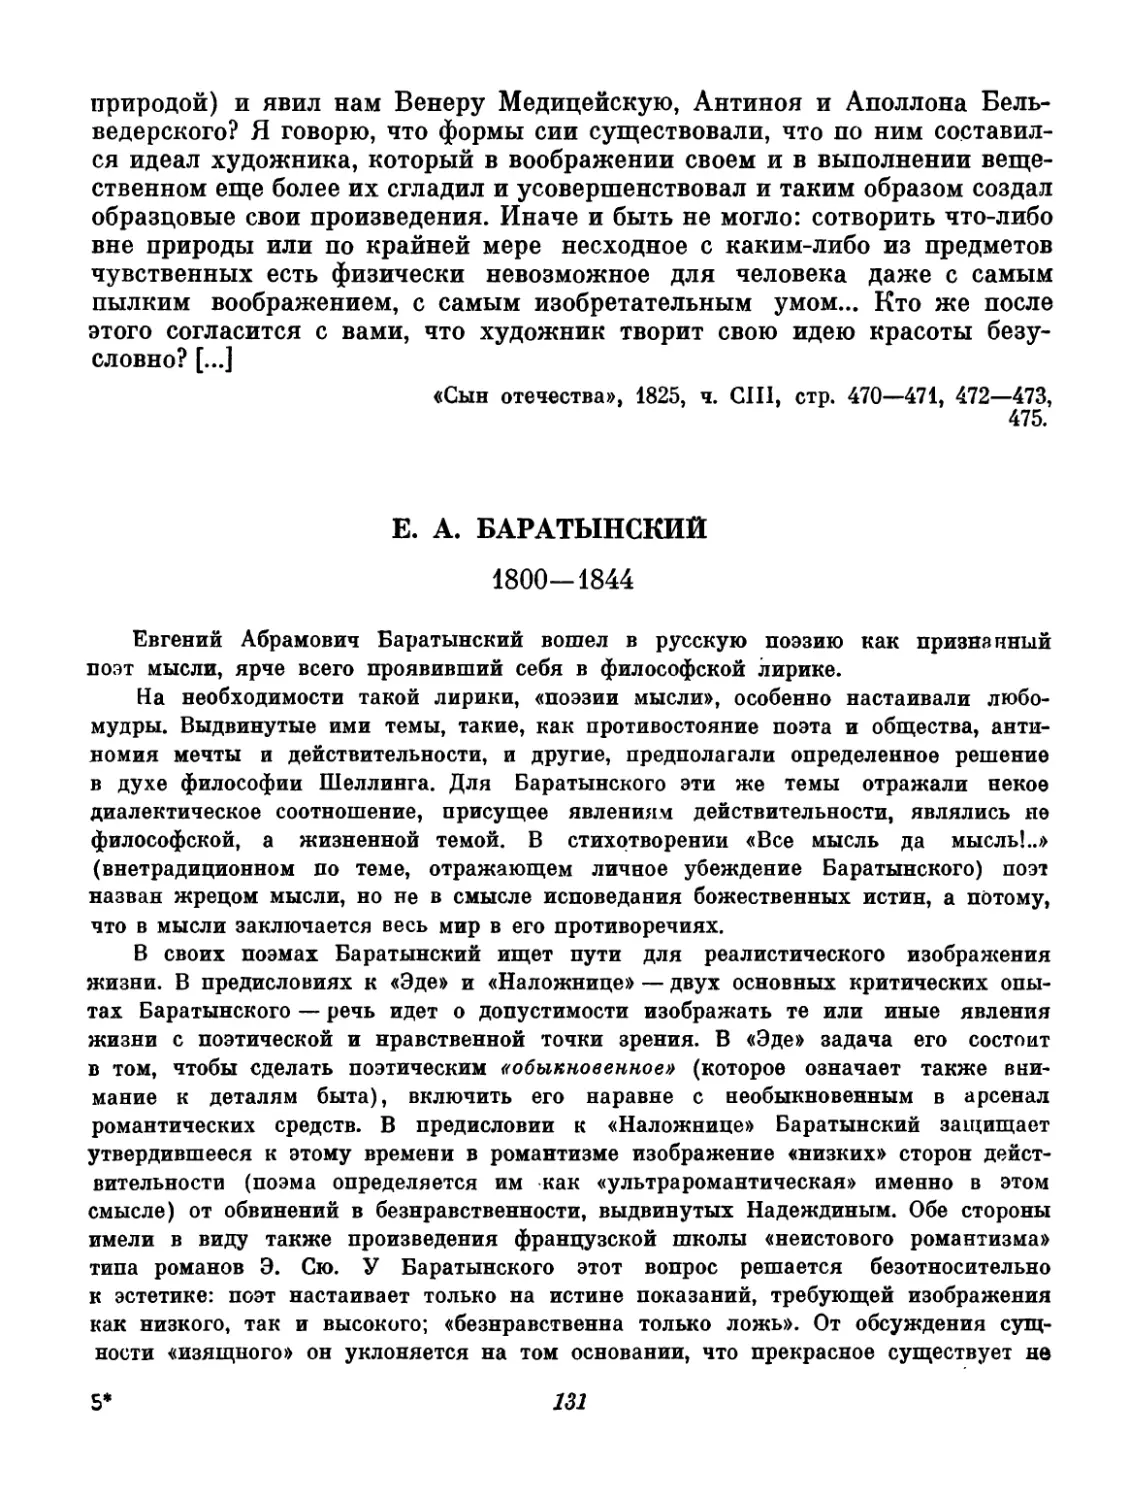 Баратынский. Вступительный текст и составление А. А. Морозова